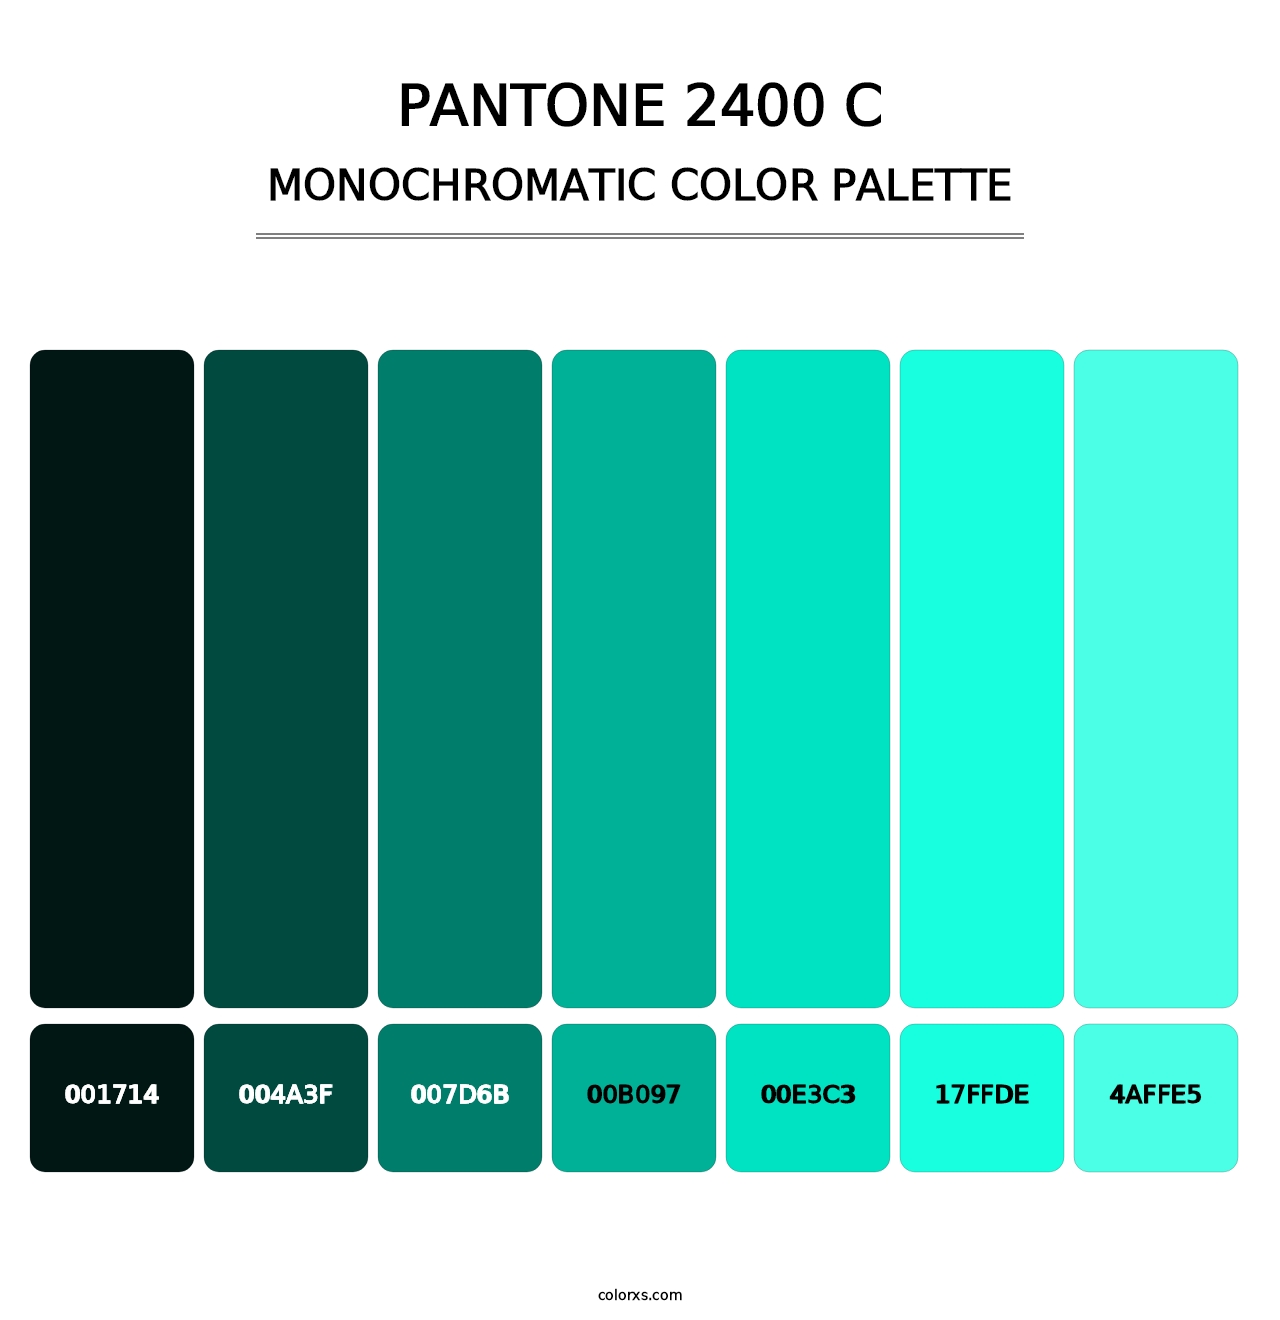 PANTONE 2400 C - Monochromatic Color Palette